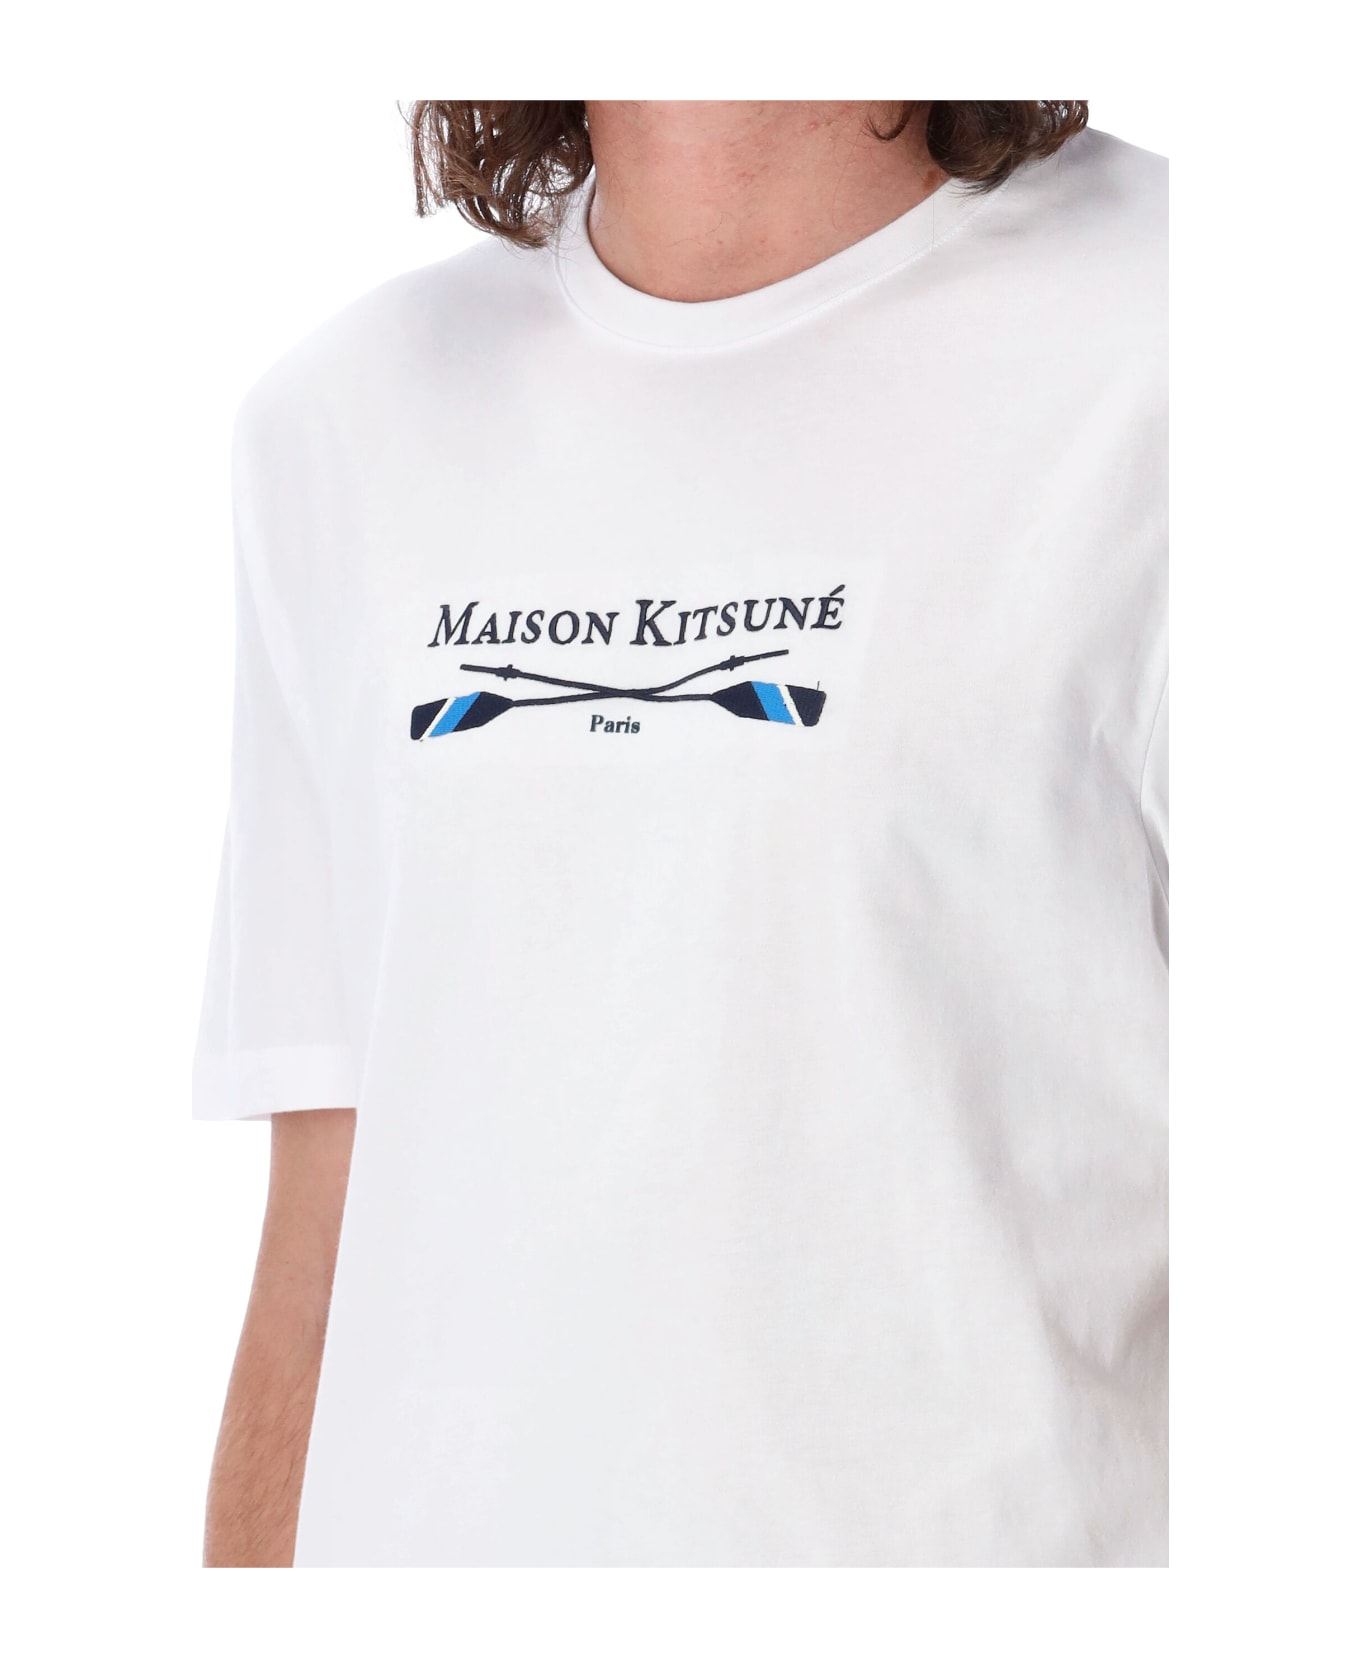 Maison Kitsuné Oars Regular T-shirt - White